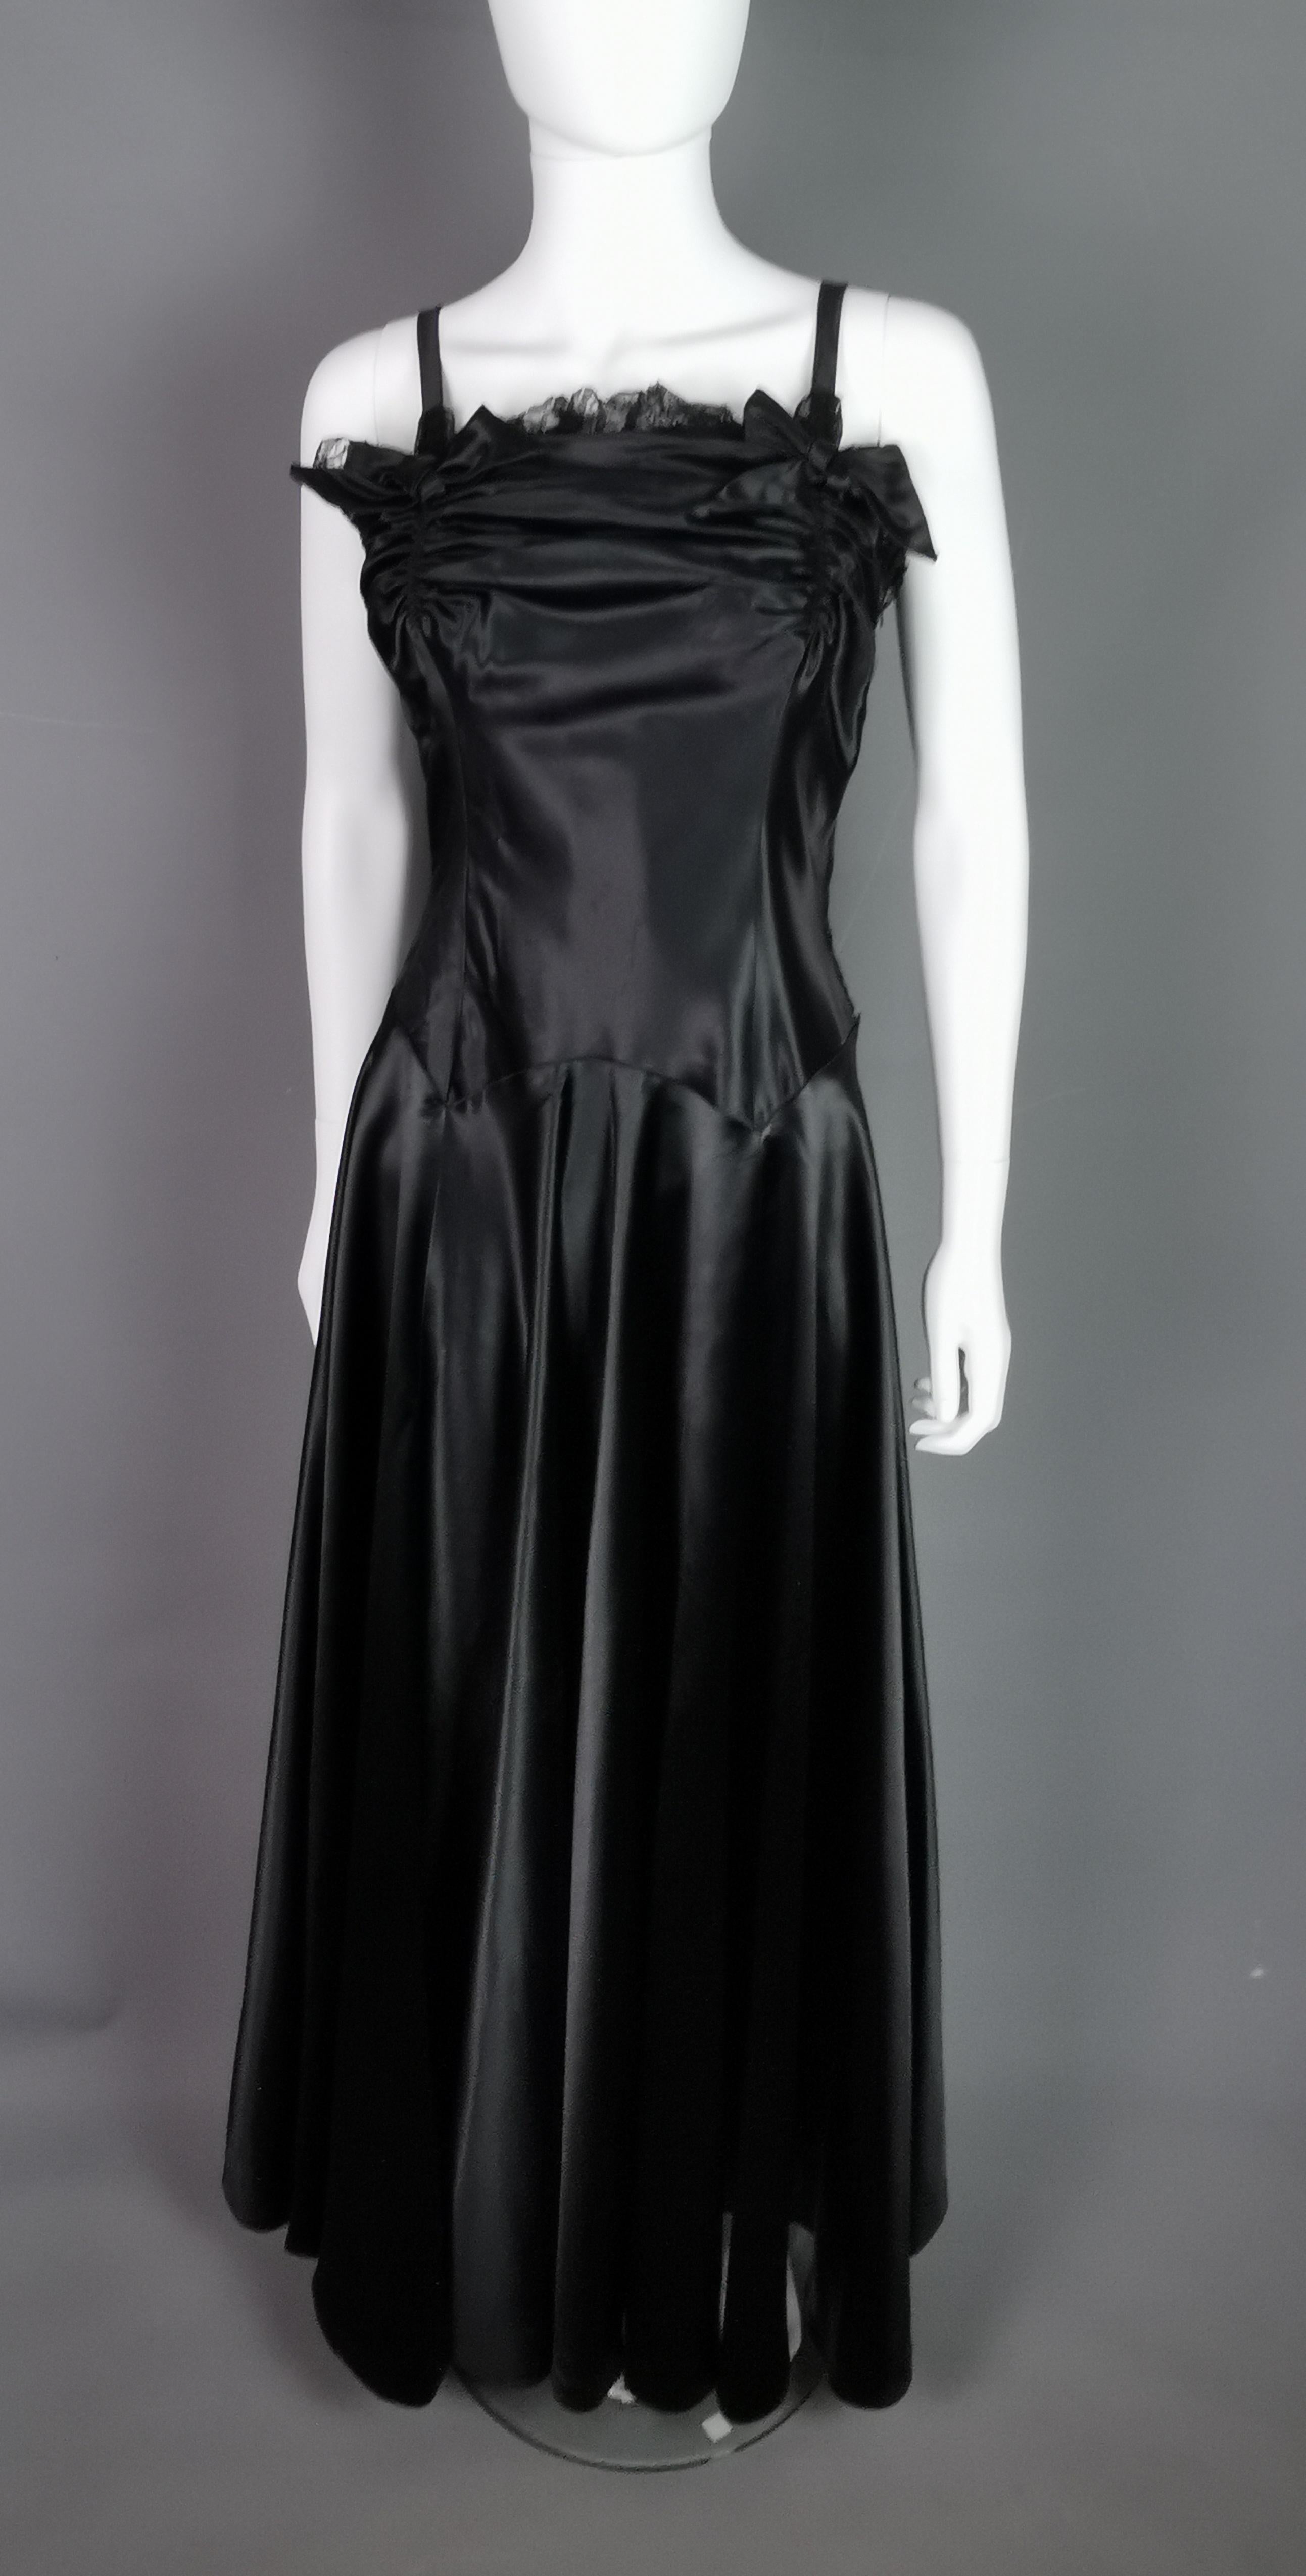 Cette rare robe de soirée vintage des années 1940 est vraiment l'étoffe dont les robes sont faites !

D'une superbe conception, cette robe très flatteuse pour la silhouette est confectionnée dans un satin liquide d'un noir profond qui tombe et coule